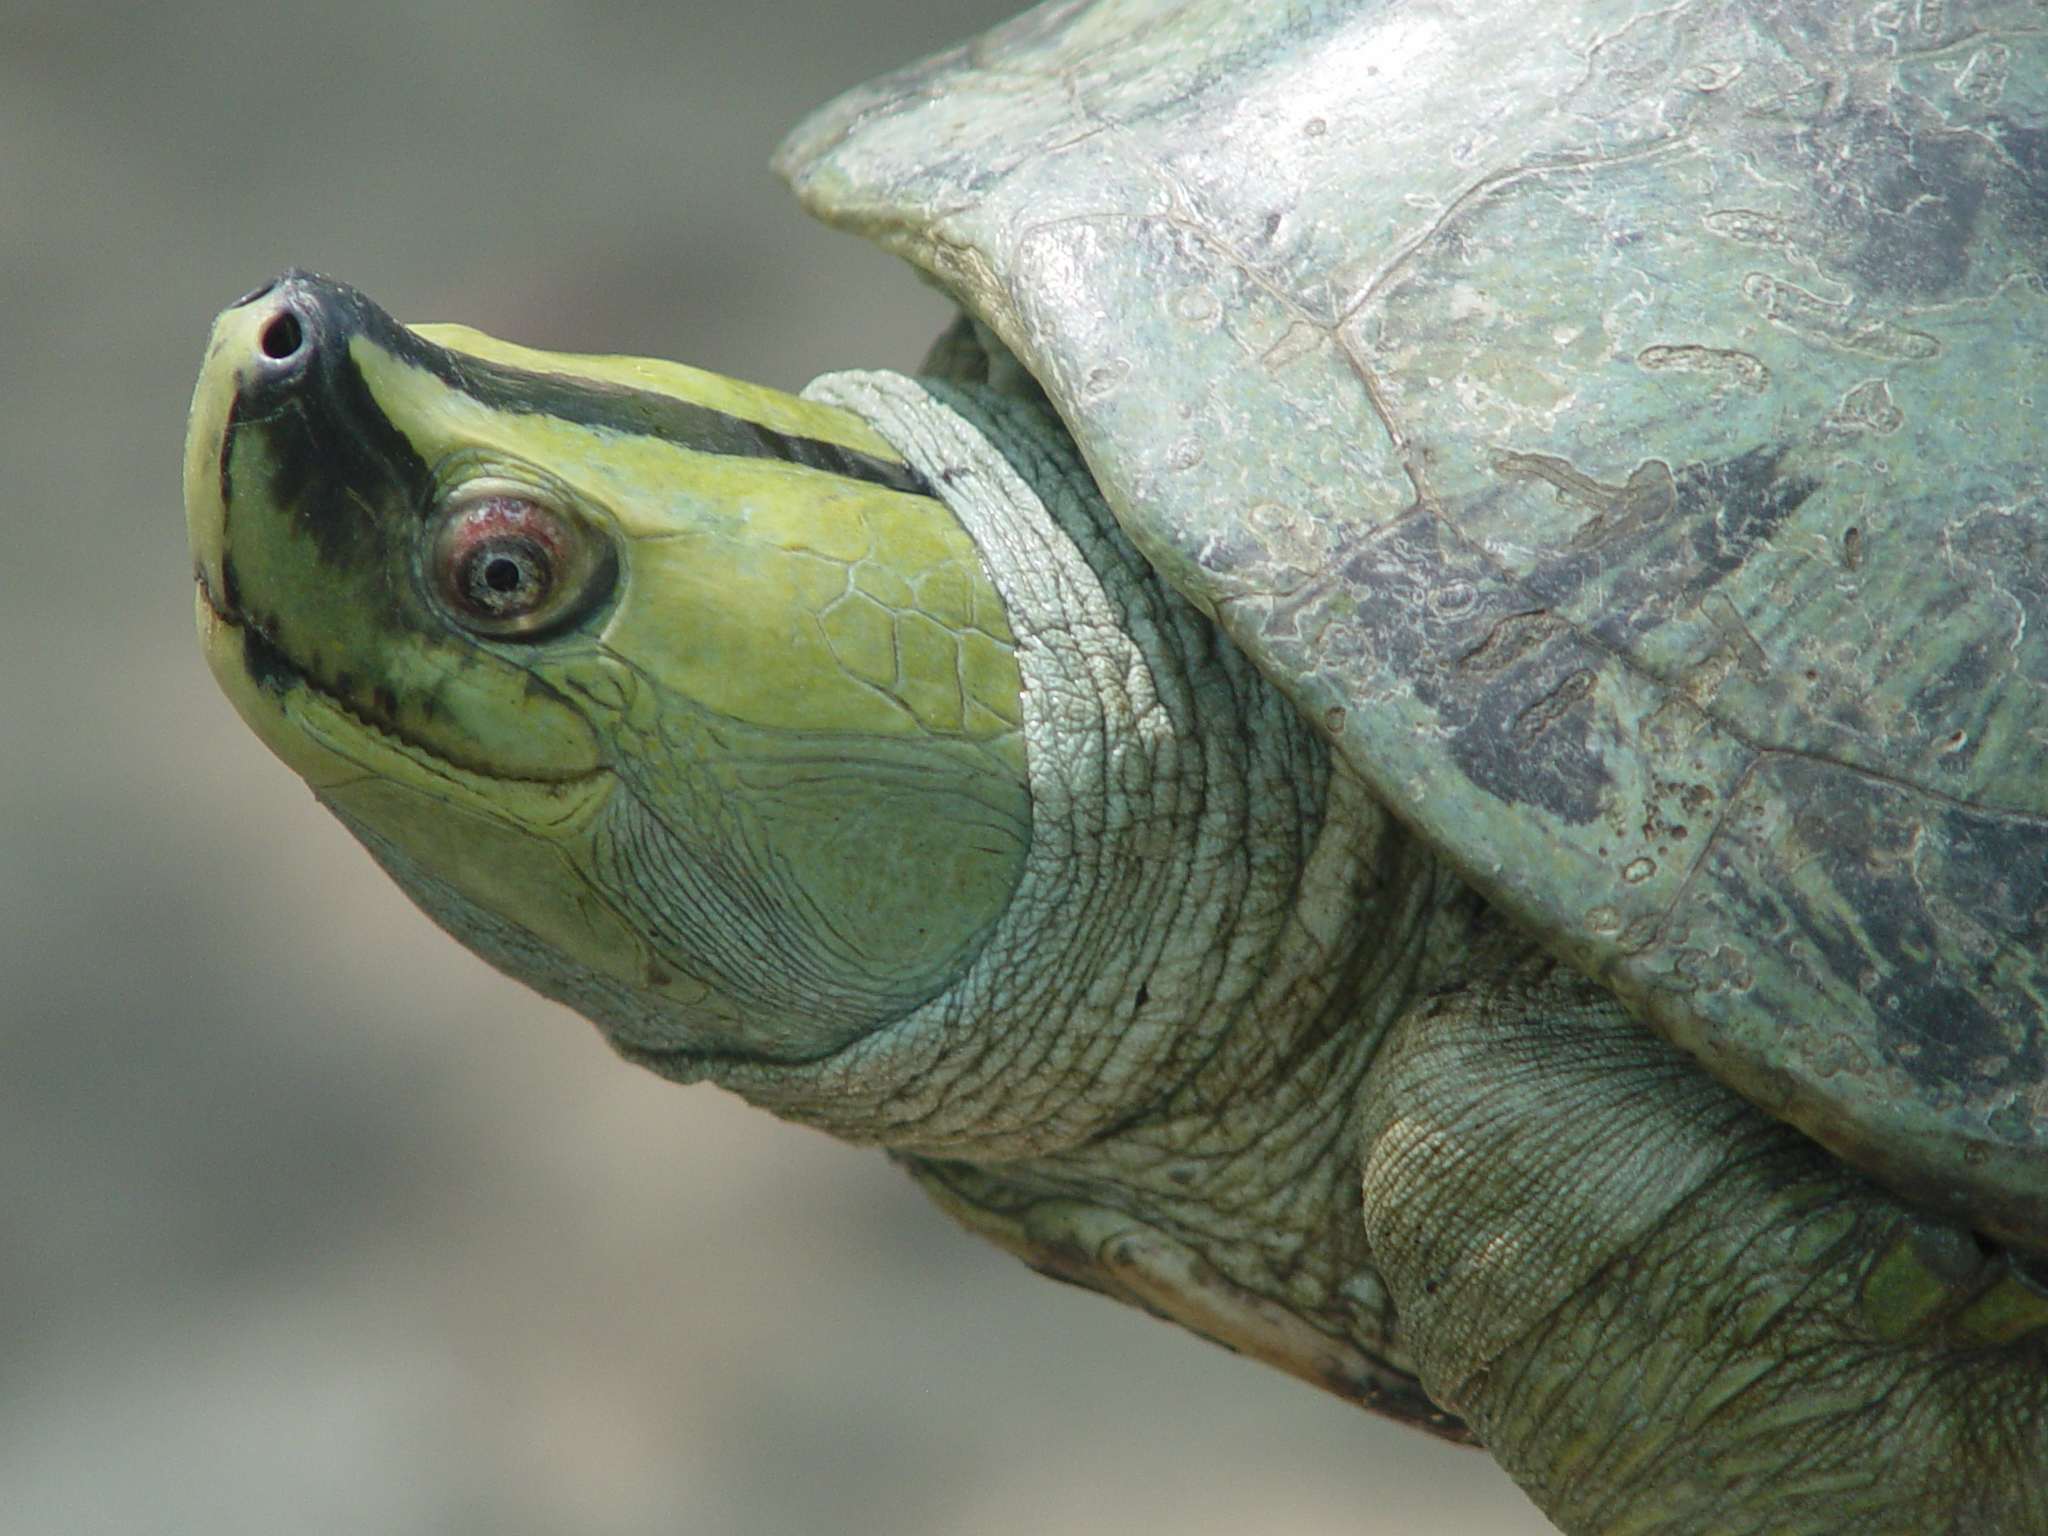 burmese-roofed-turtles